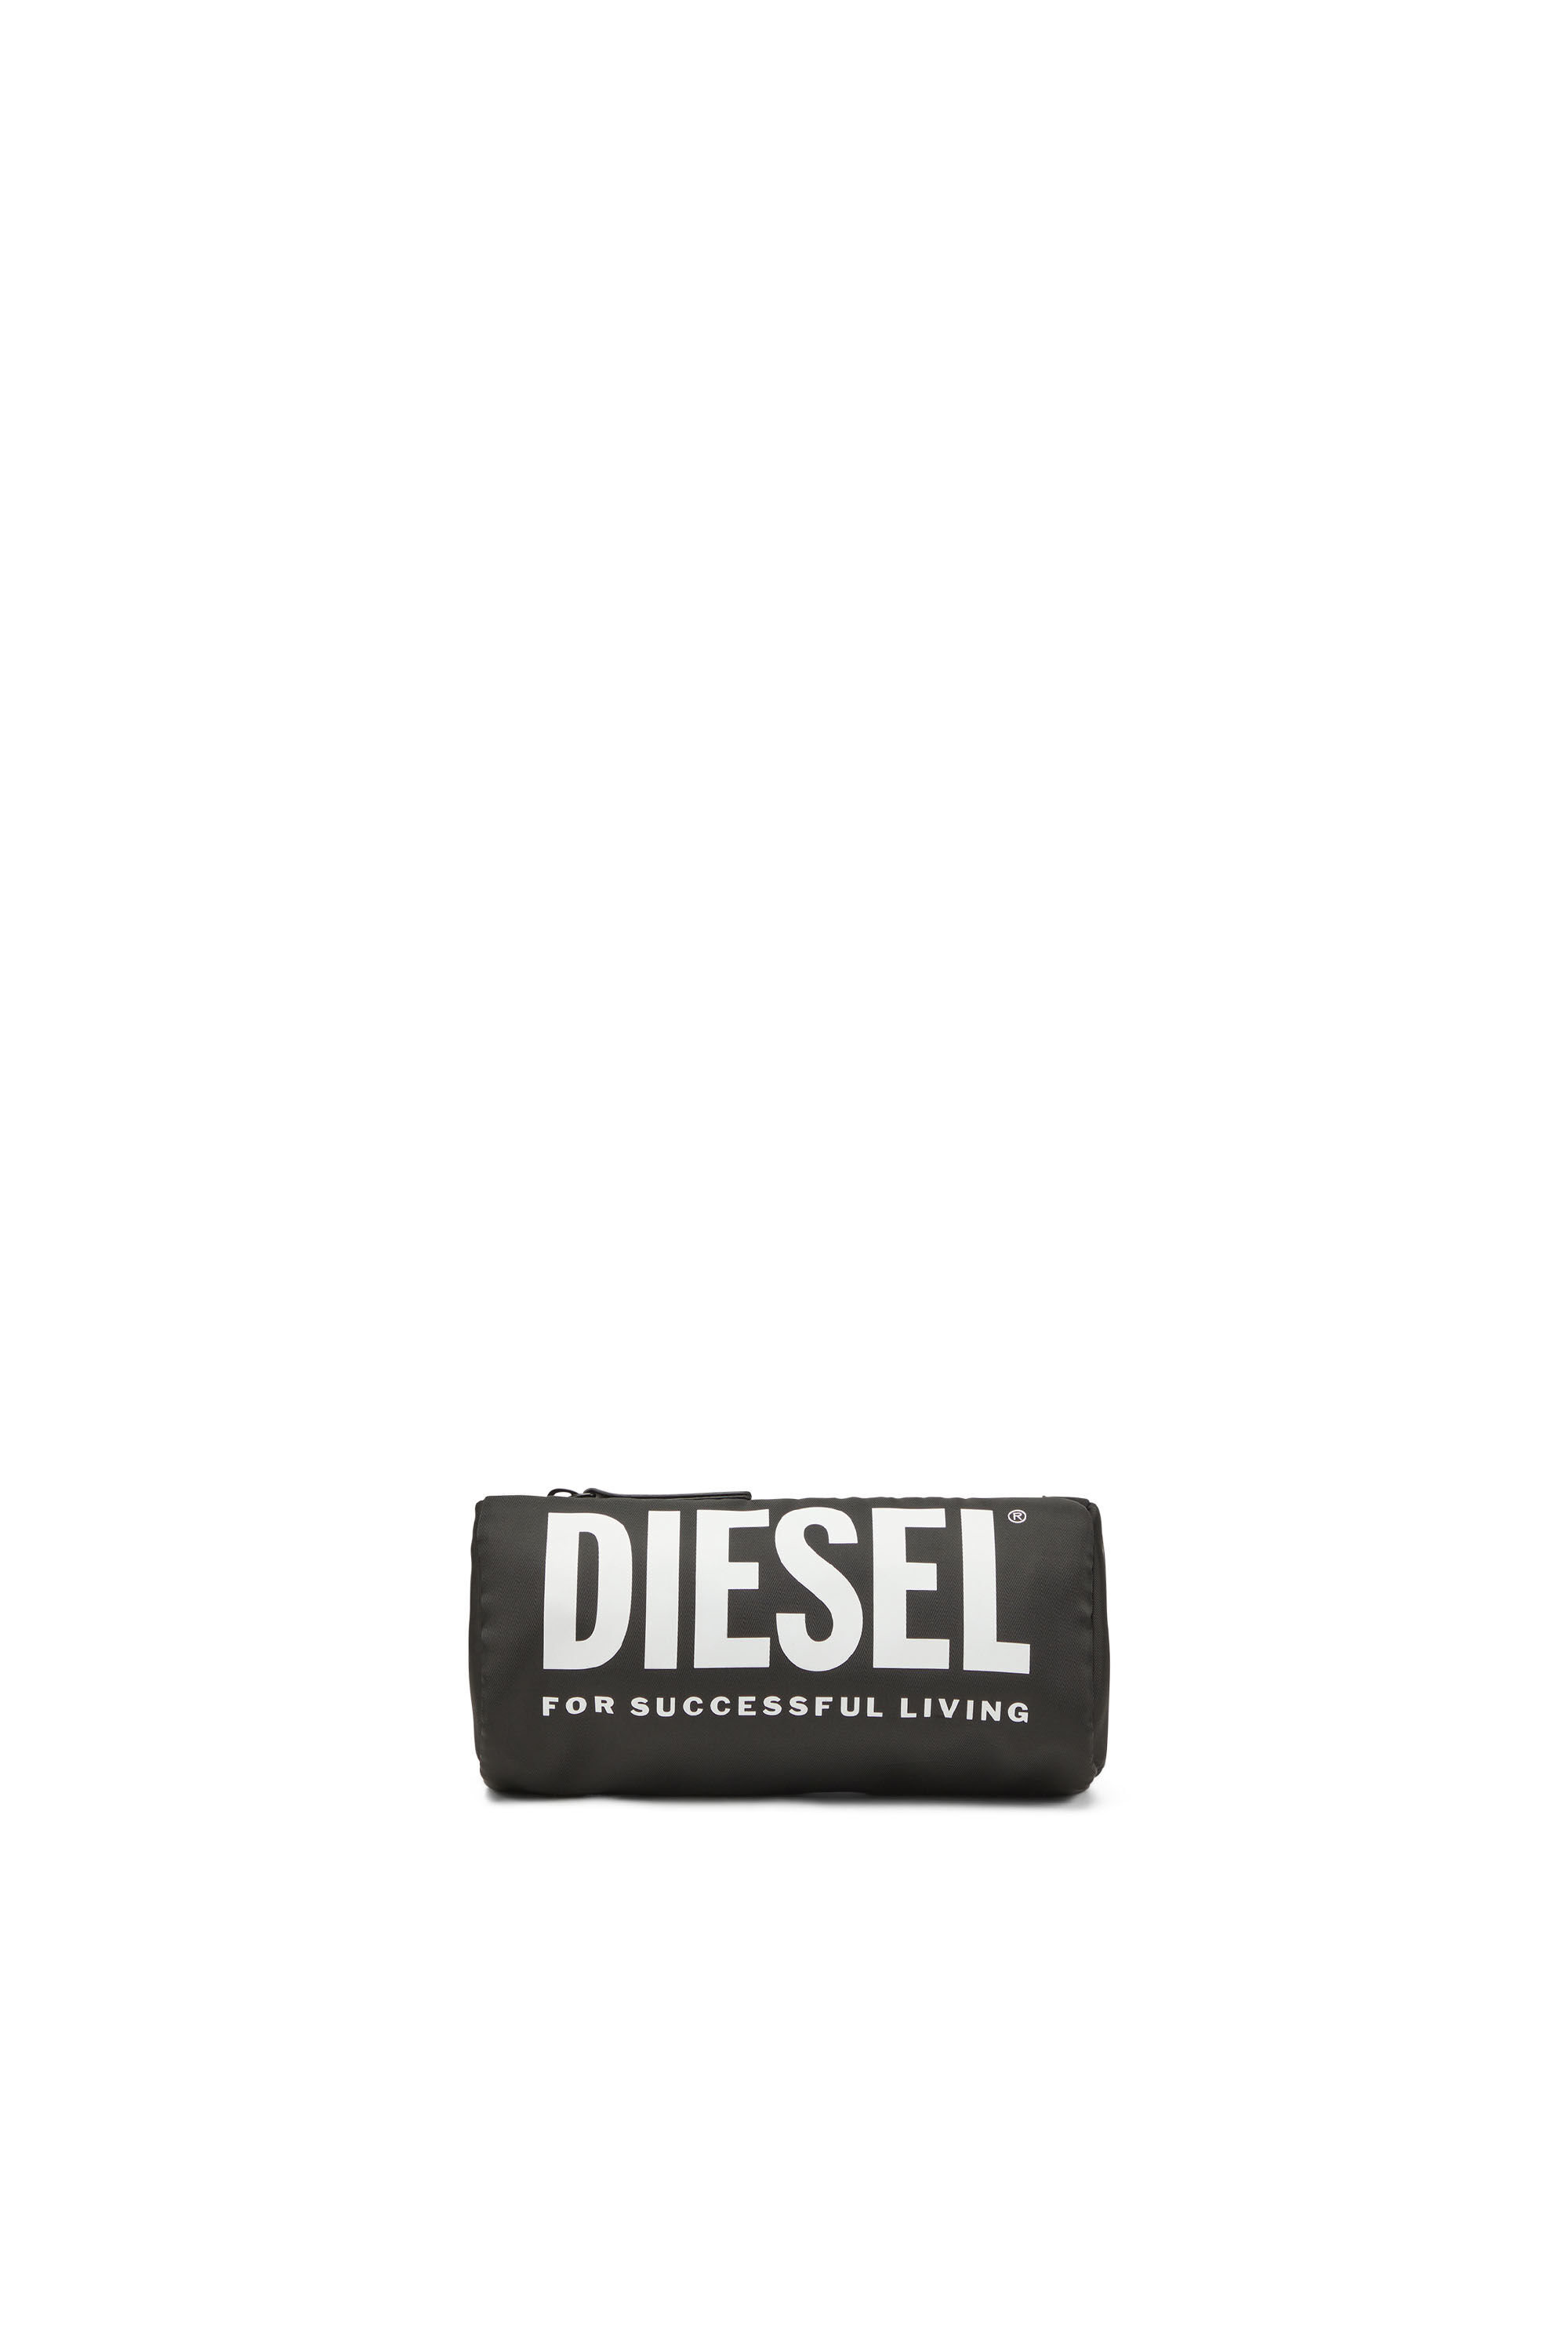 Diesel - WCASELOGO, Schwarz - Image 1